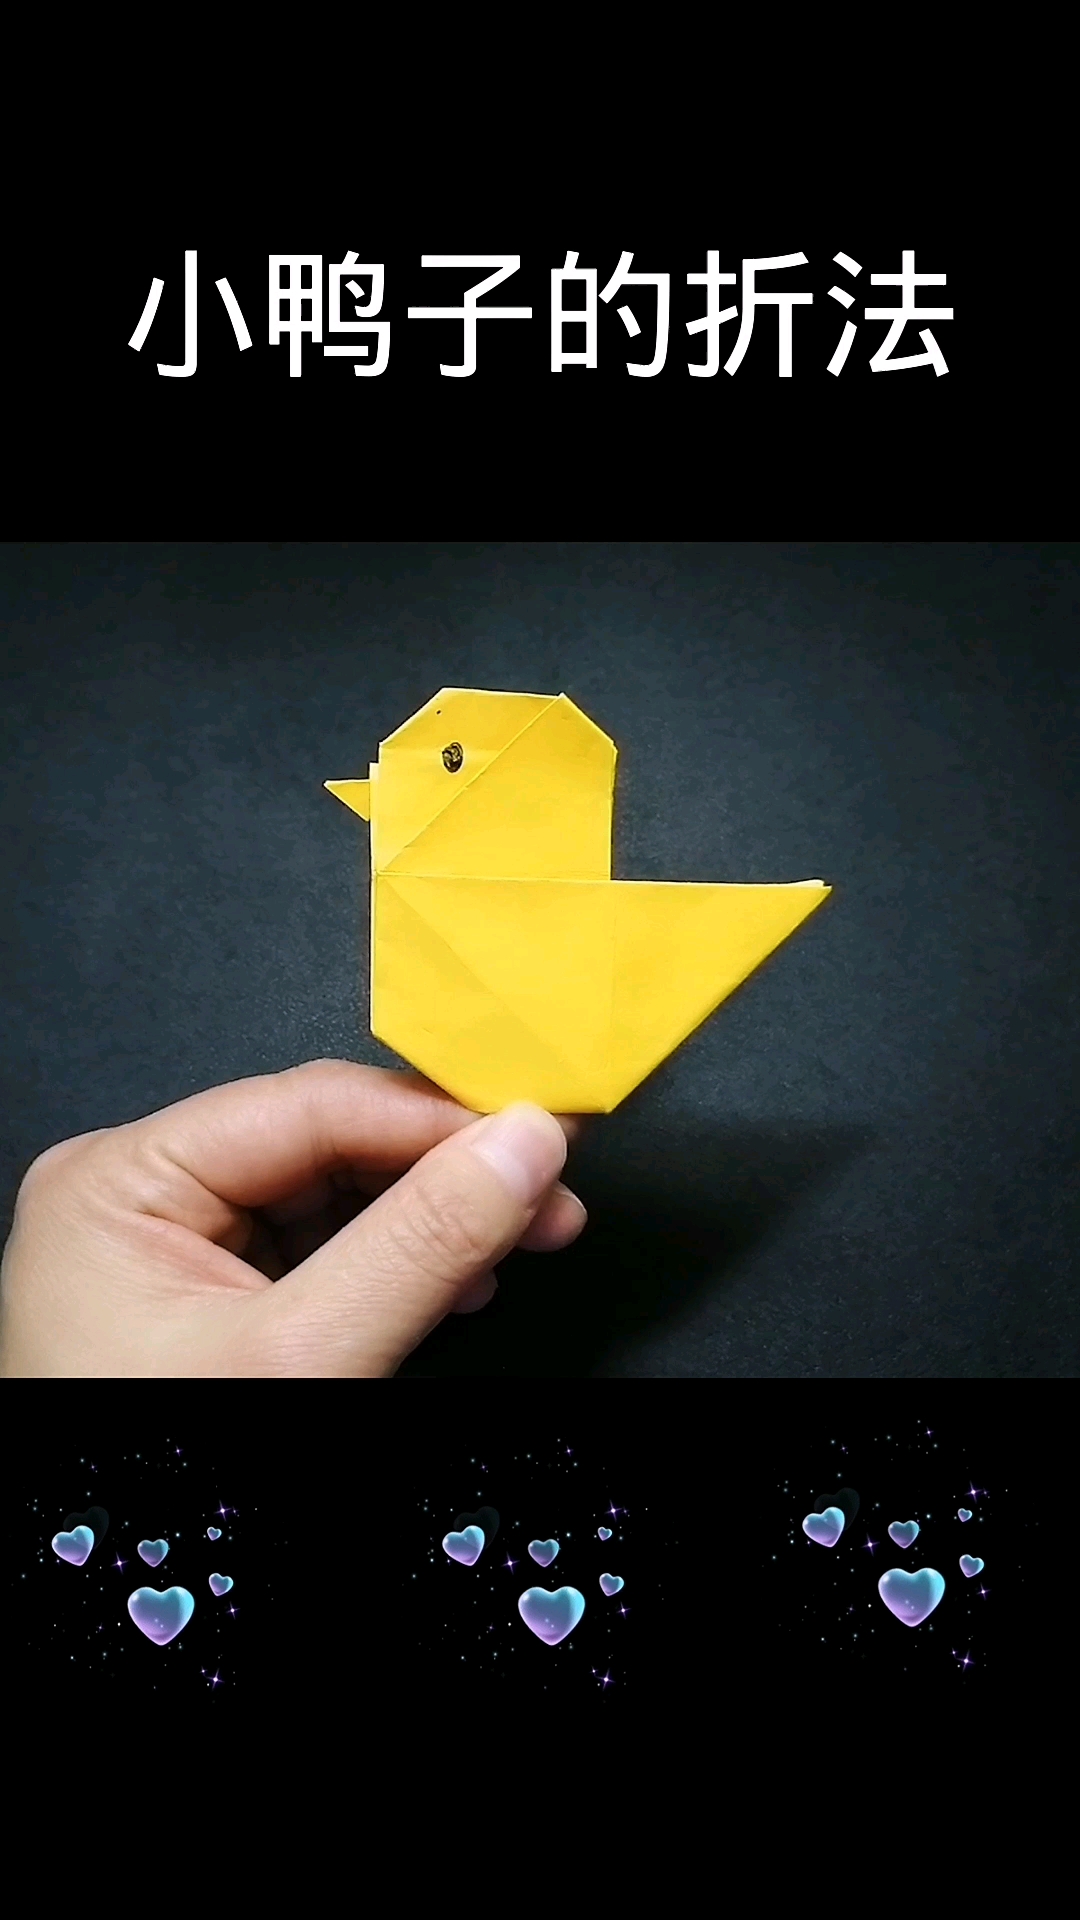 鸭子的折纸方法图片